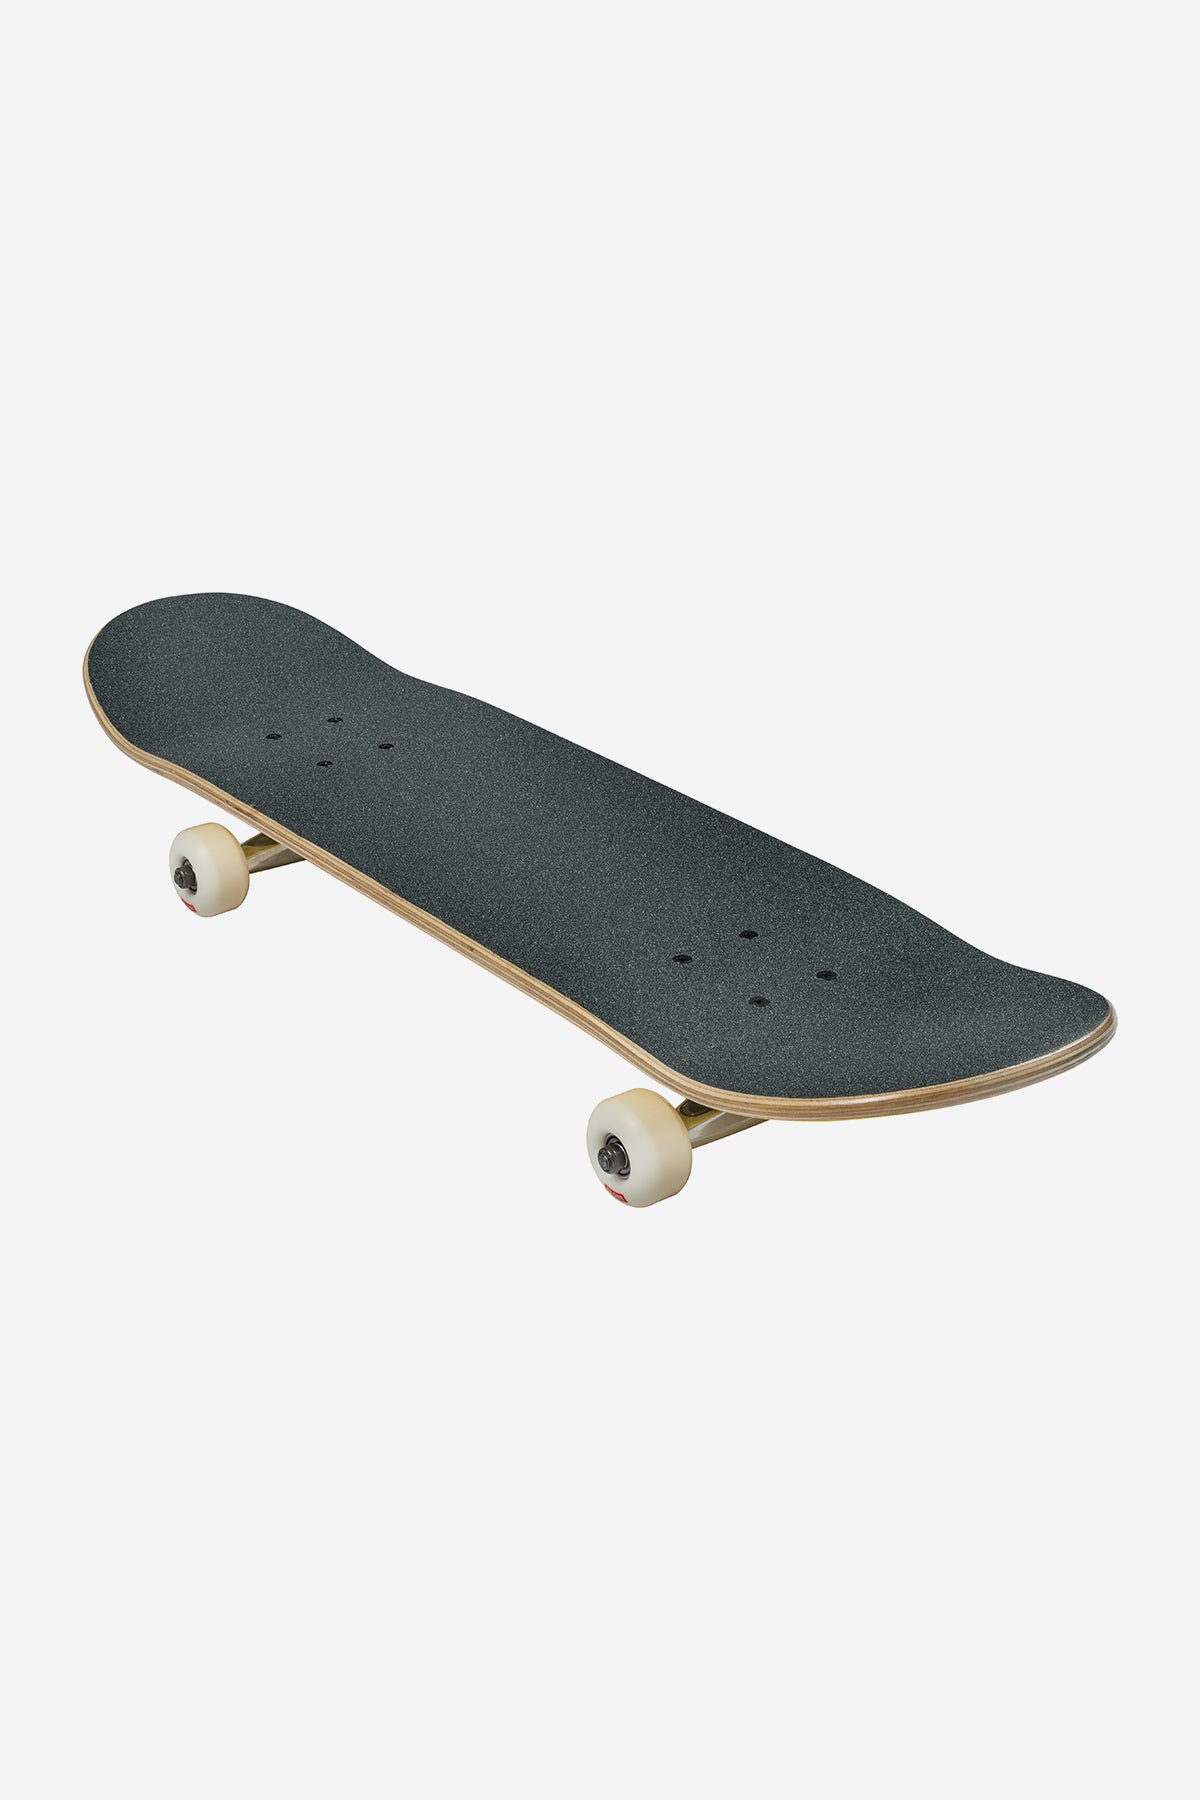 Globe - Goodstock - Uit White - 8.0" Compleet Skateboard